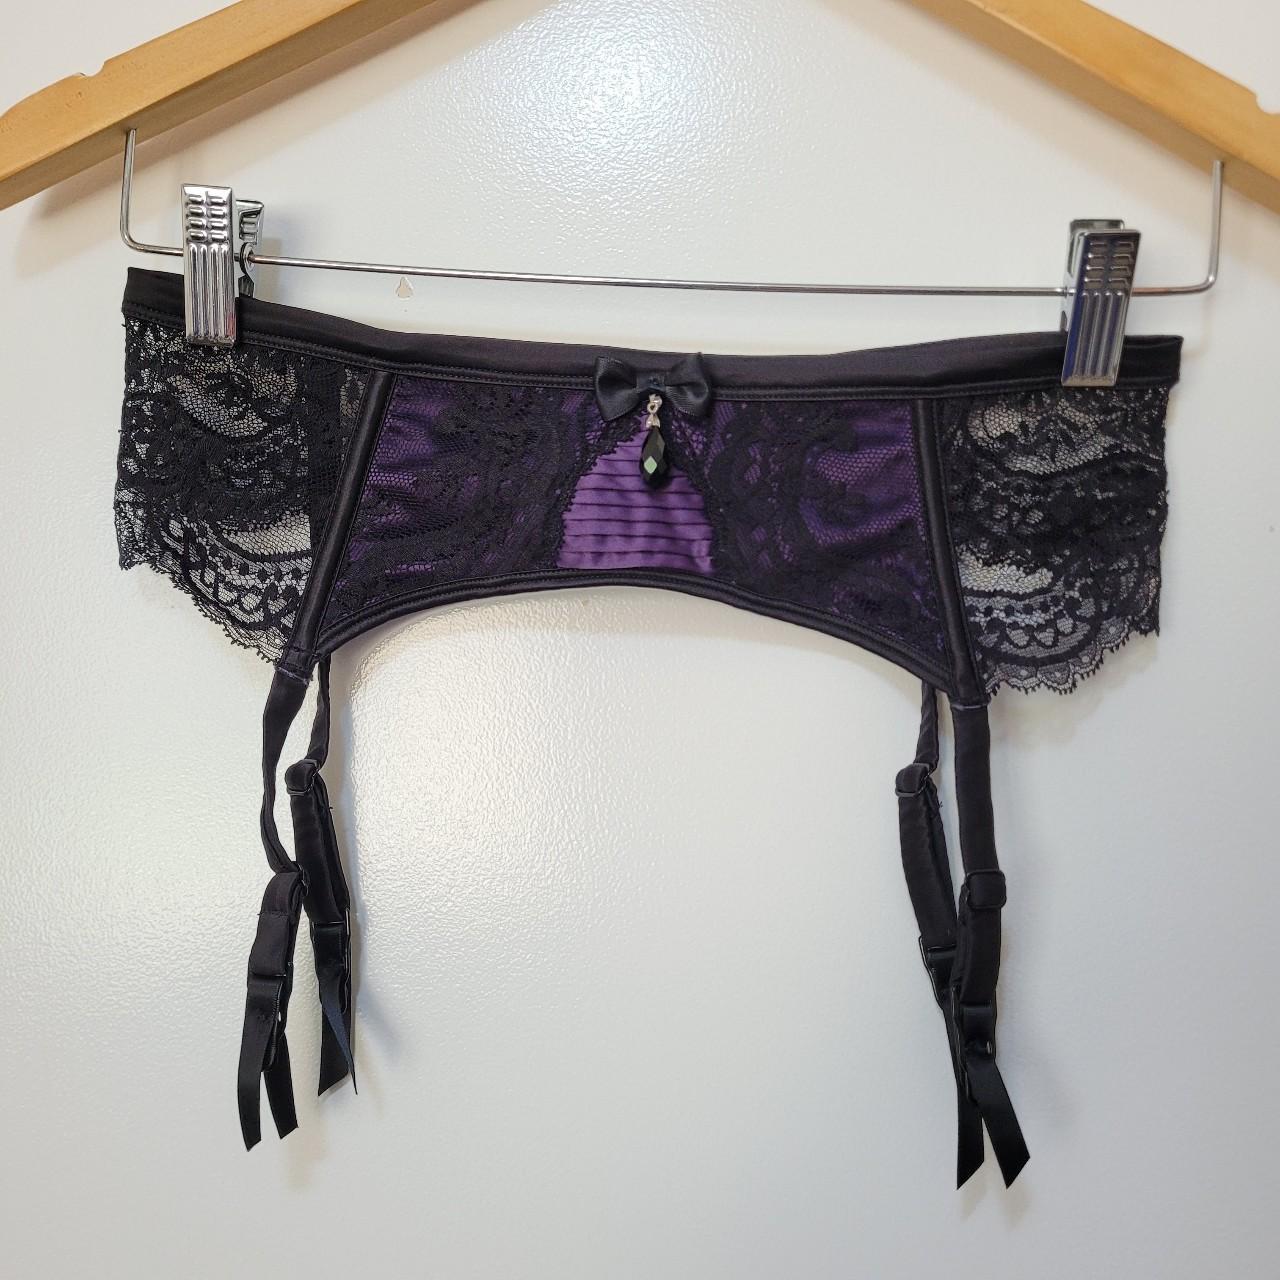 Honey Birdette Women's Black and Purple Underwear | Depop